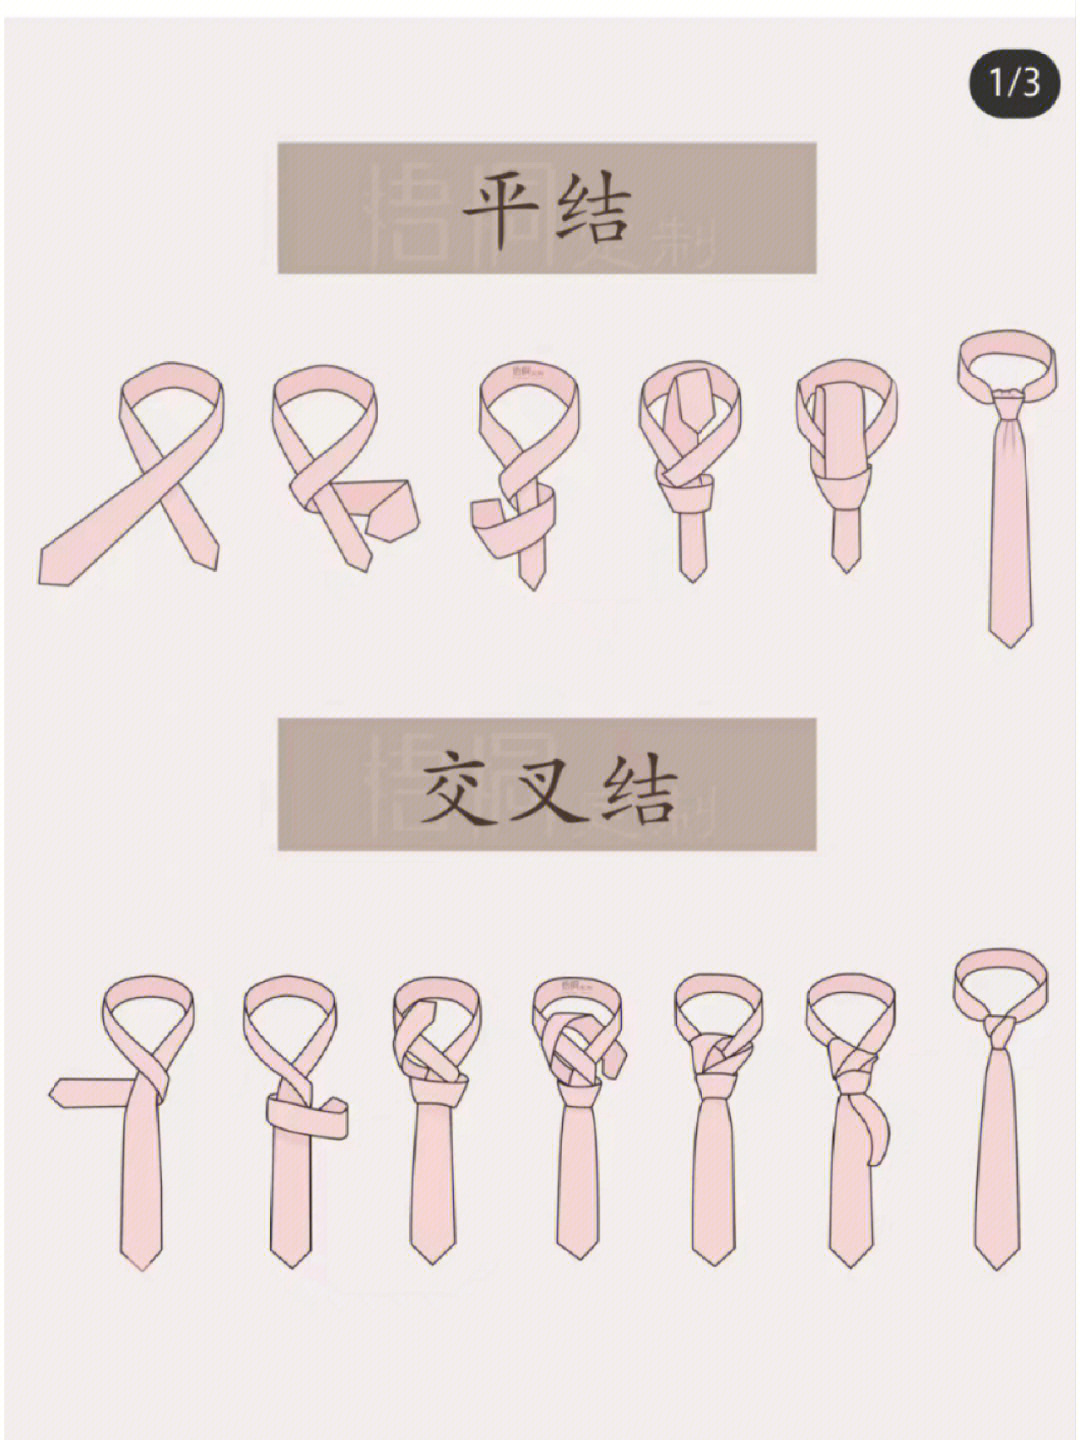 领带系法最简单的方式图片